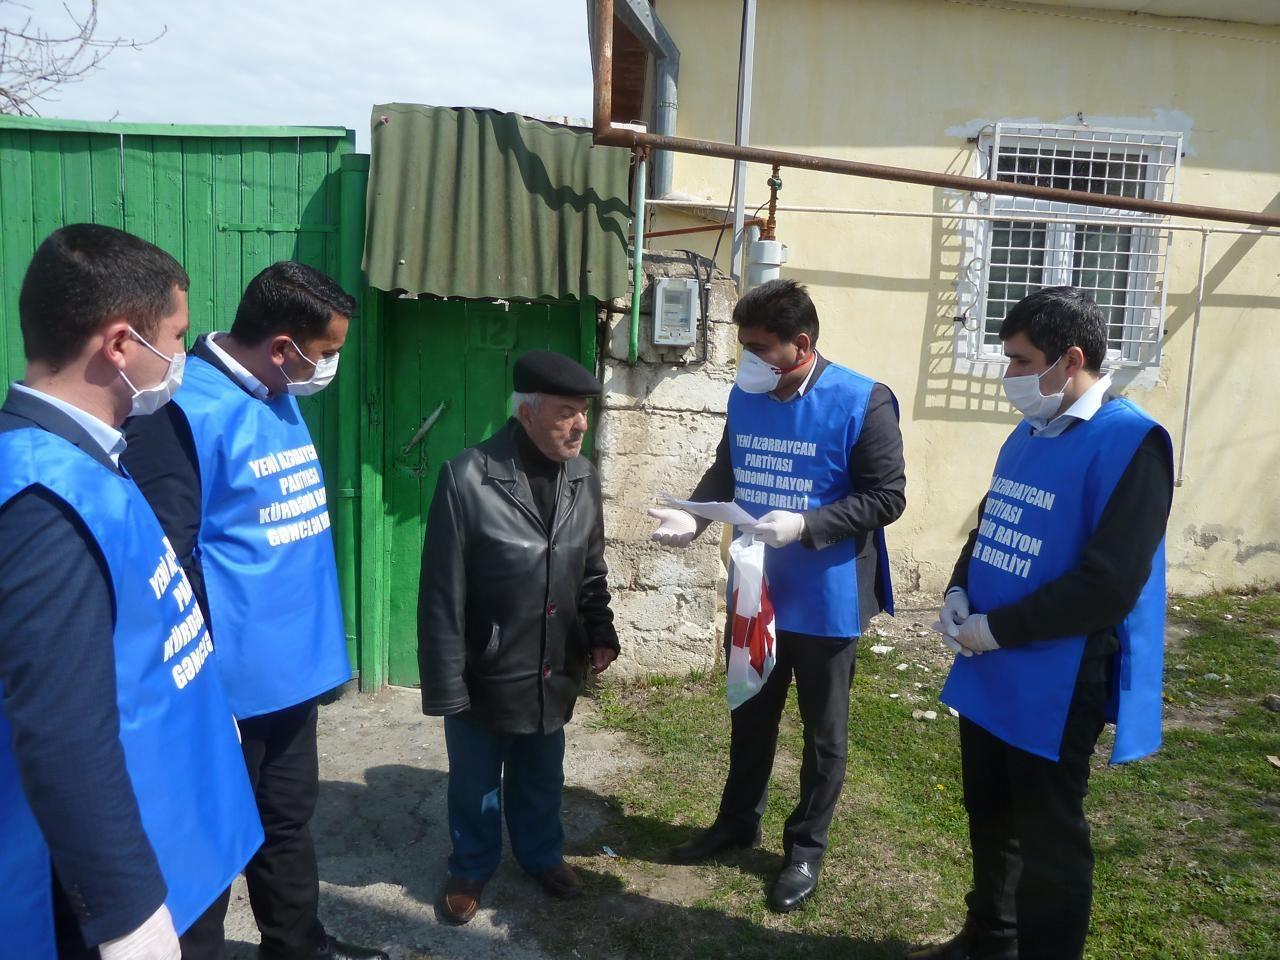 Волонтеры партии "Ени Азербайджан" помогли более 2500 одиноким людям за пять дней